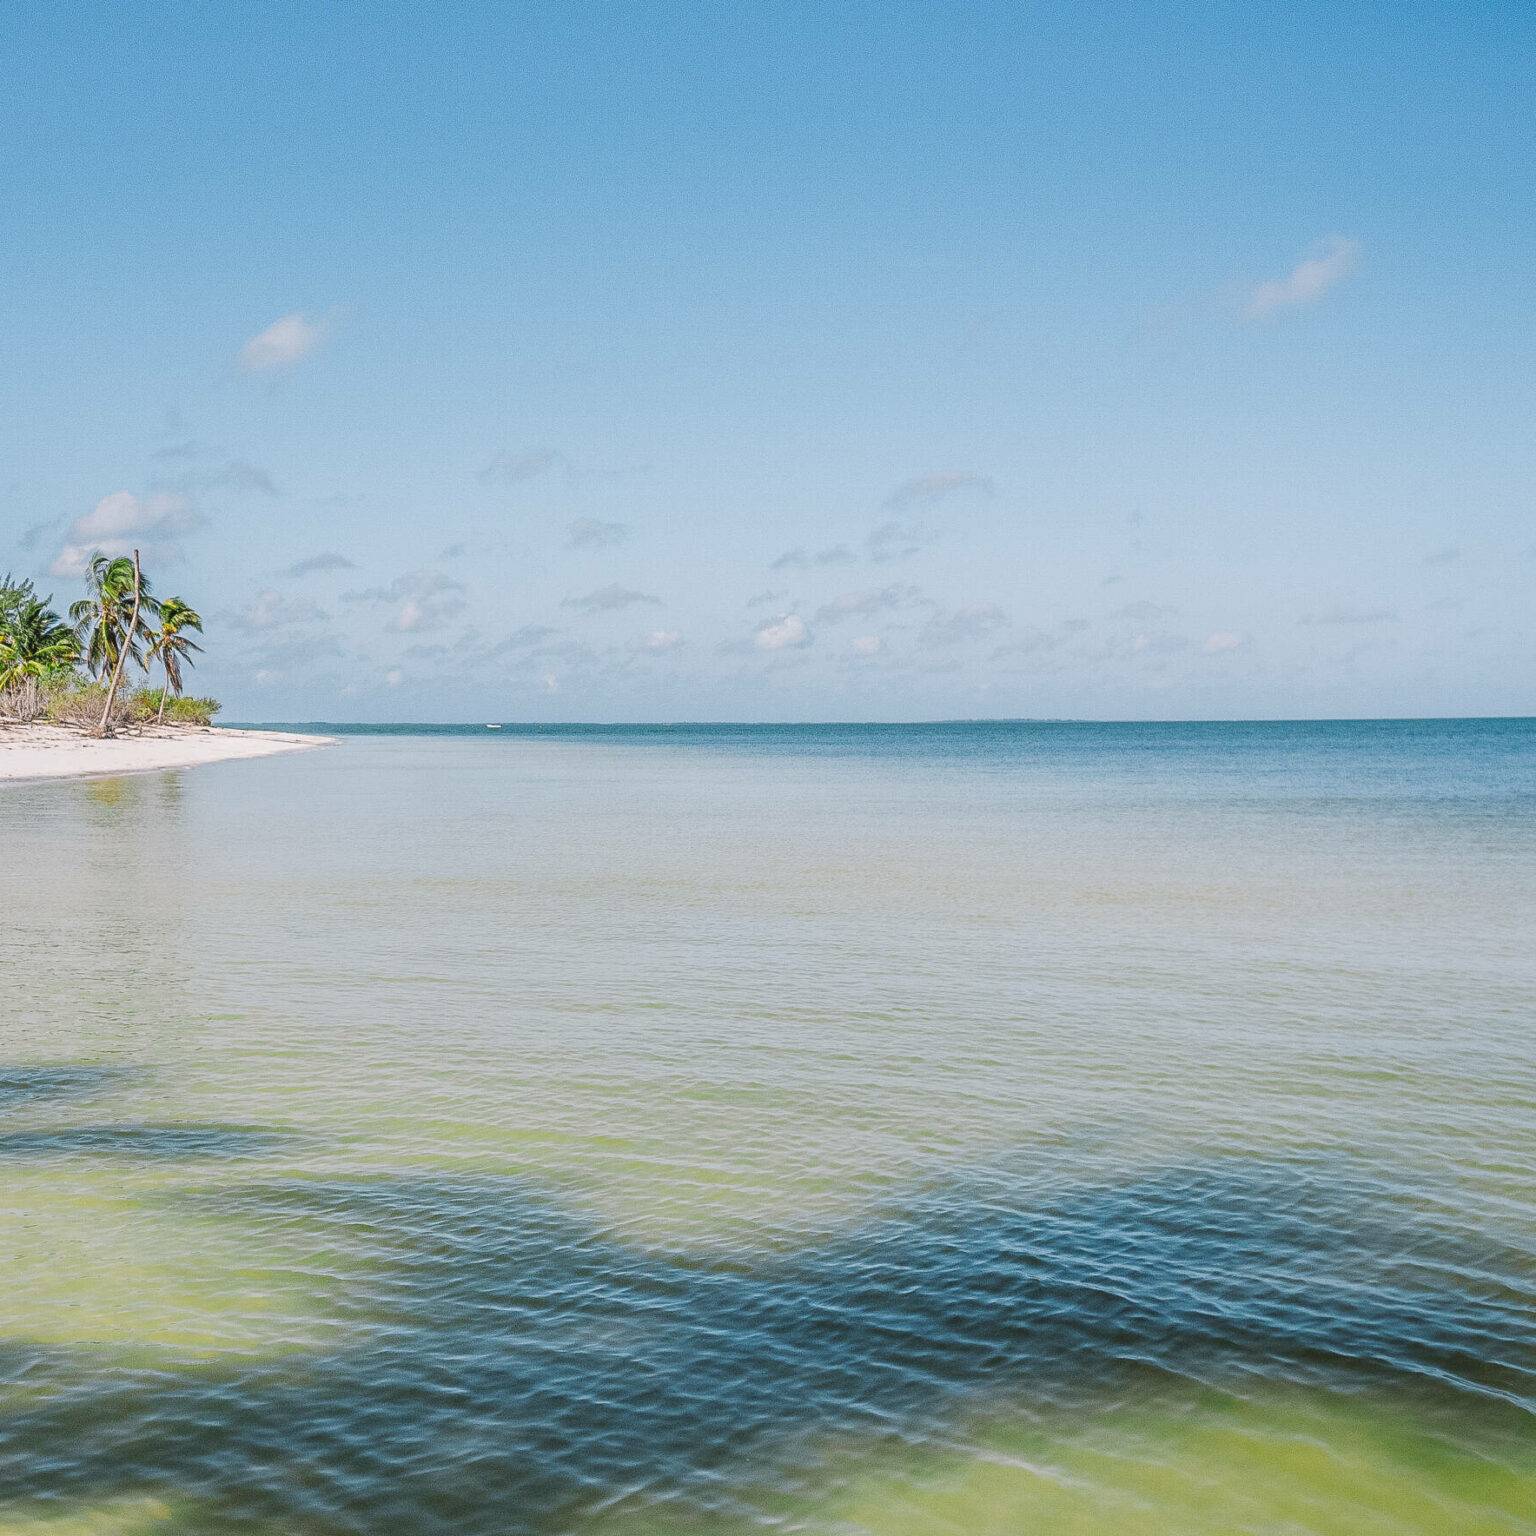 Weitläufiges Meer vor dem Strand von Isla Holbox, im Hintergrund mit Palmen besetzt.